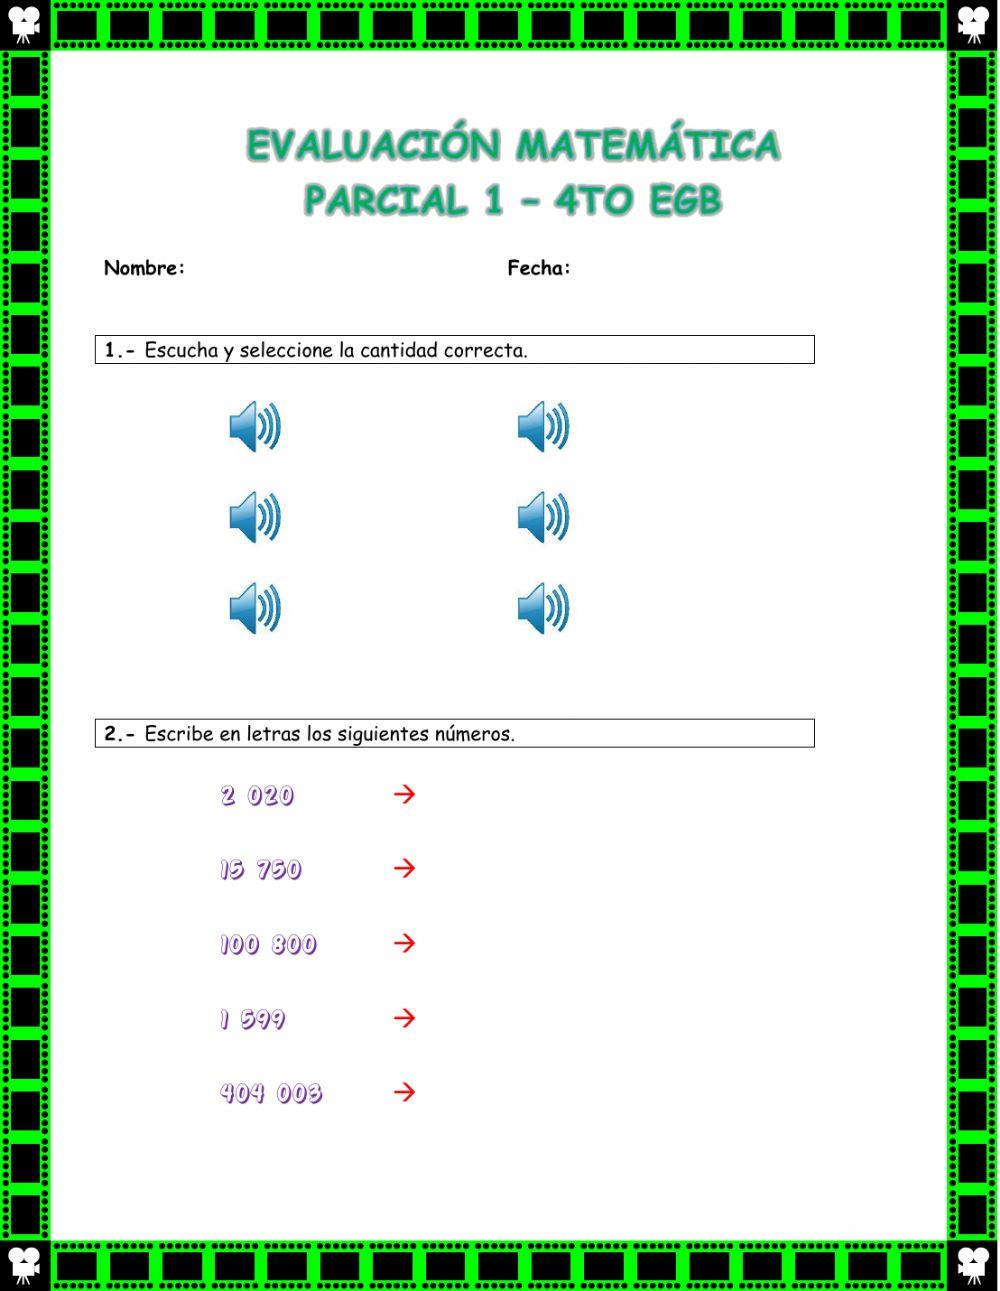 Evaluación Matemática 4to EGB - Parcial 1